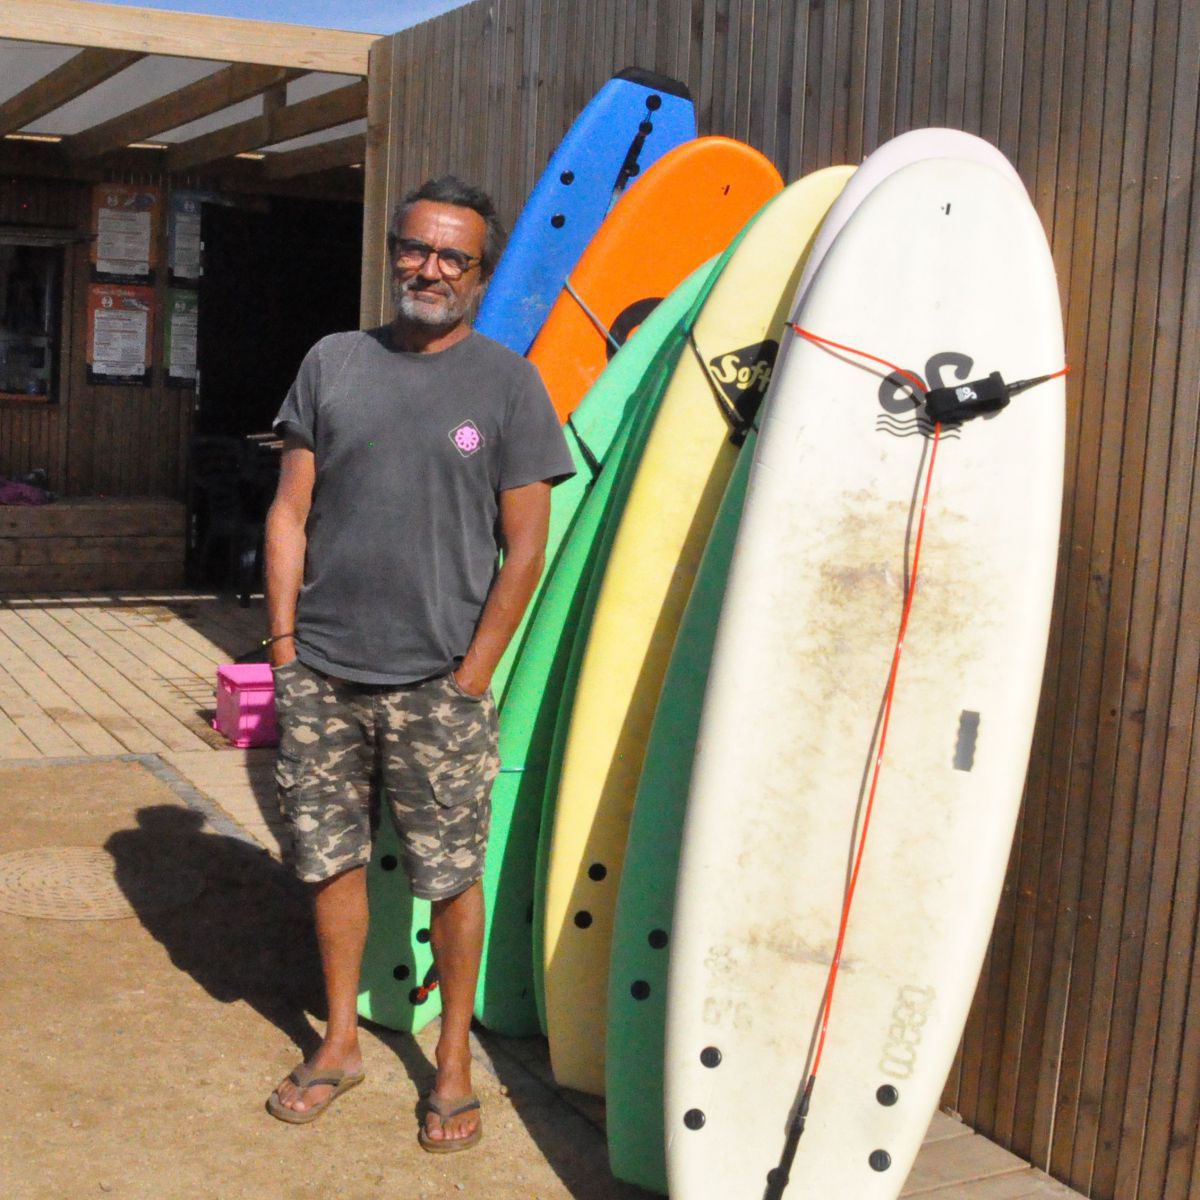 Momo posiert vor der Hütte der Surfschule neben einer Reihe bunter Surfbretter und blau-schwarzer Neoprenanzüge.